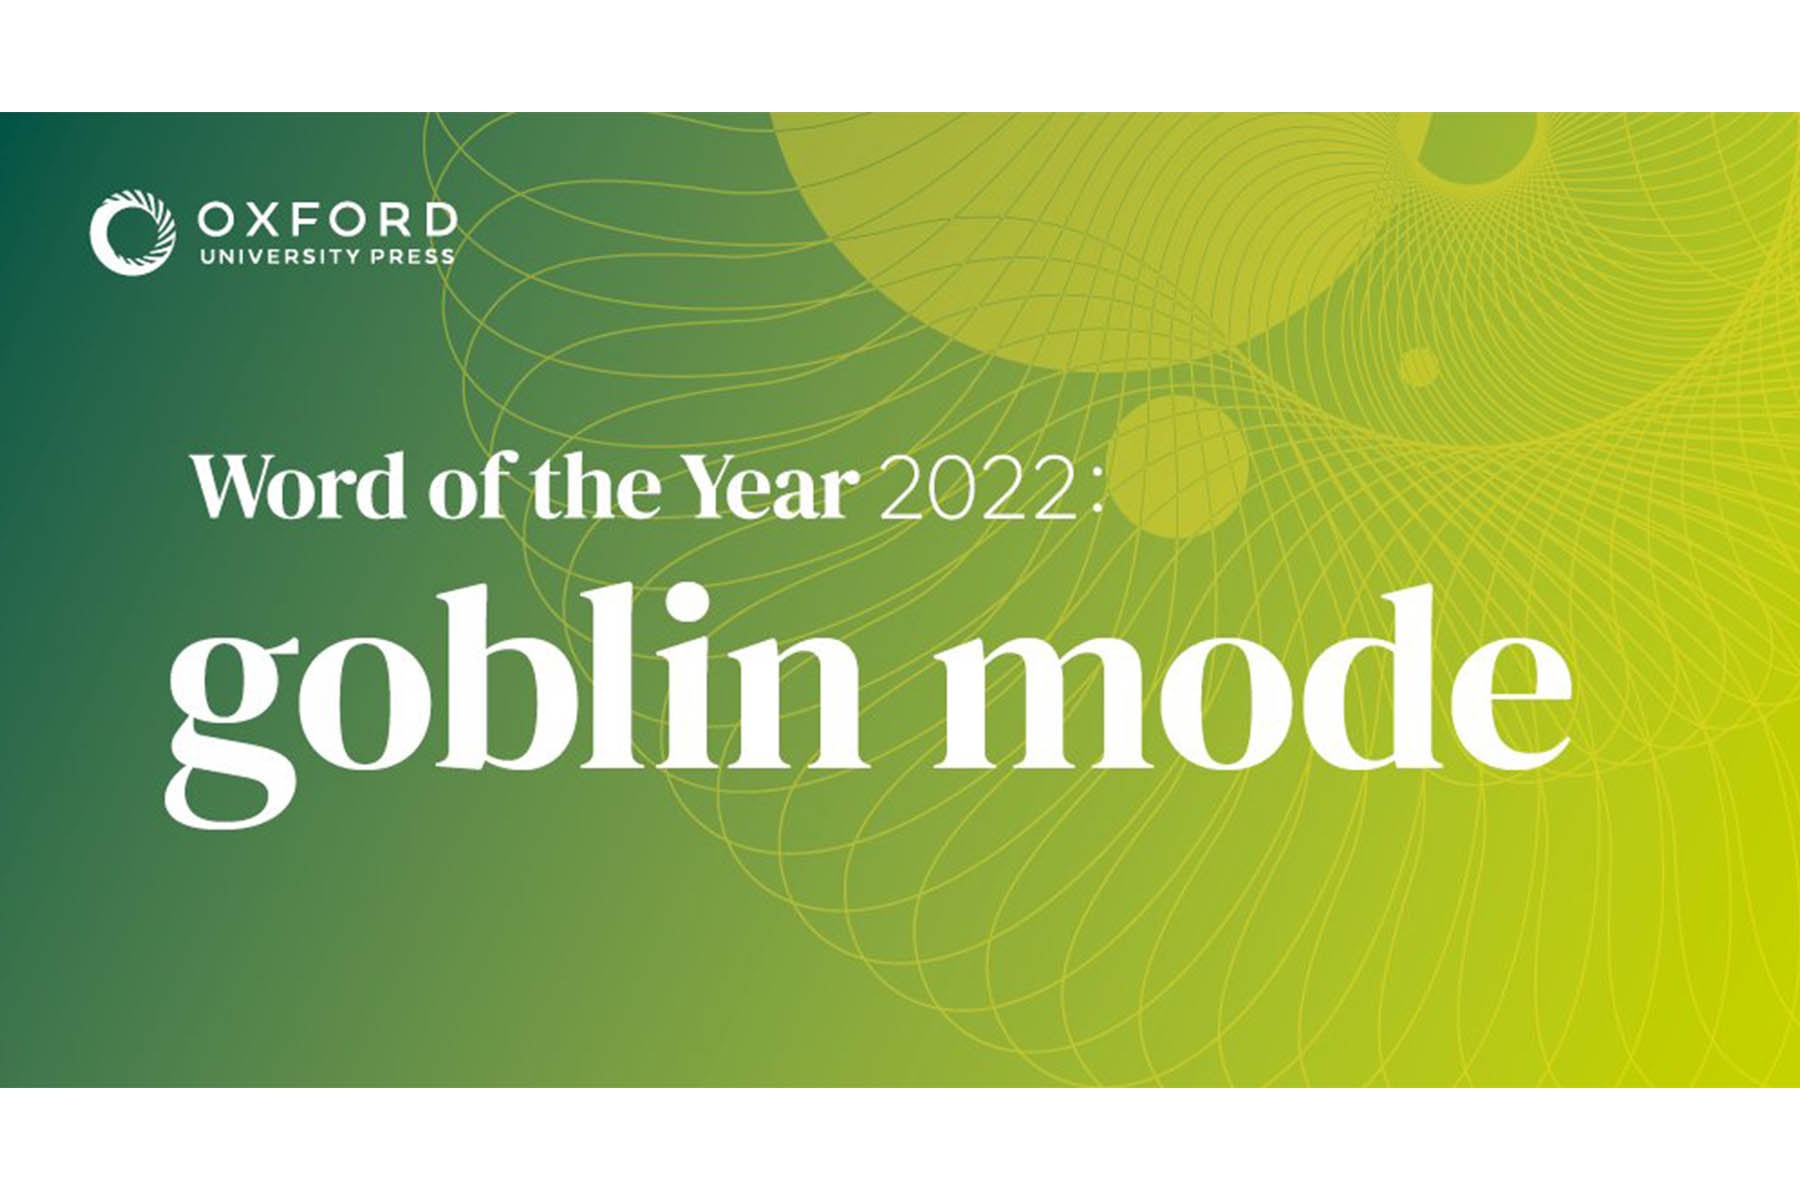 「Goblin mode」正式獲選成為牛津辭典 2022 年度代表词